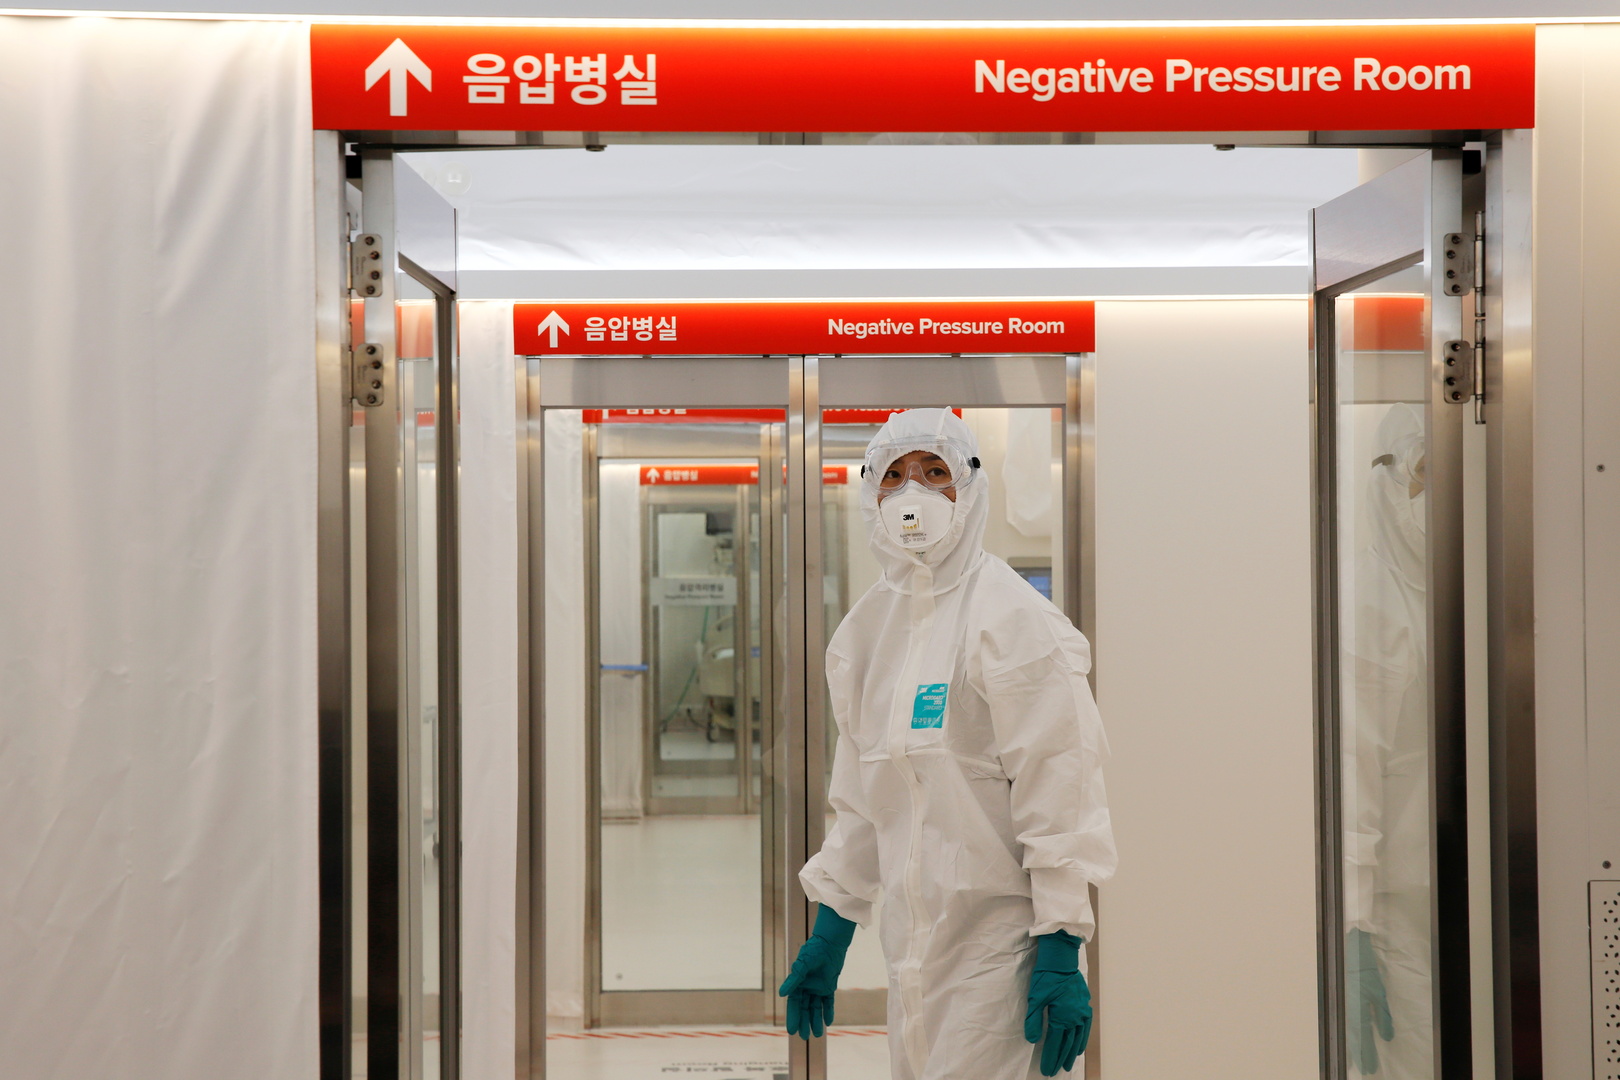 وسط تصاعد الفيروس على مستوى البلاد.. السلطات الكورية الجنوبية تعلن حالة التأهب القصوى